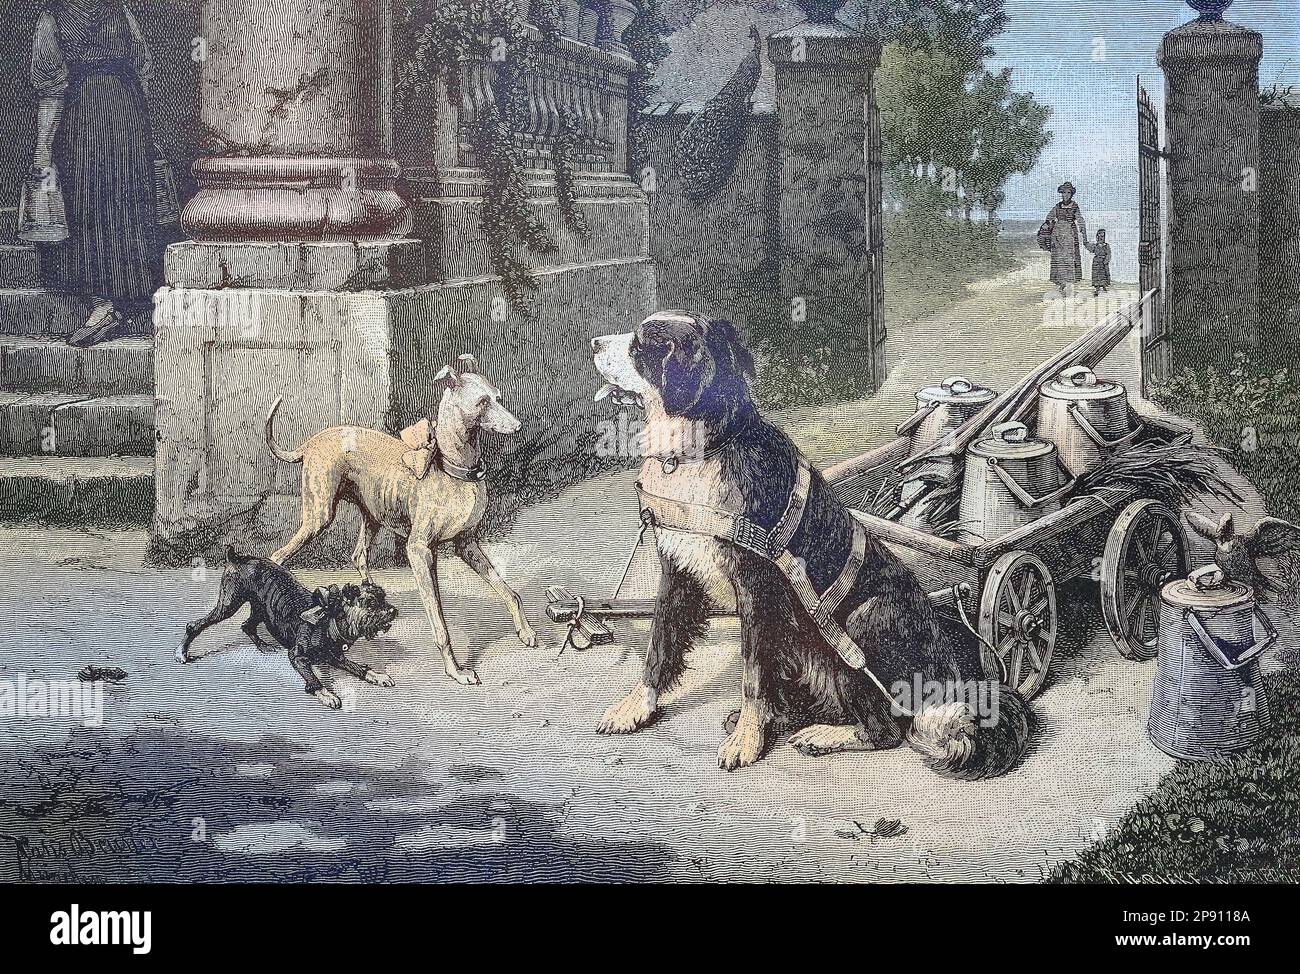 Hund als Zuggier für einen Karren mit Milchkannen, Hund als Arbeitstier, Historisch, digital restaurierte Reproduktion von einer Vorlage aus dem 19. Jahrhundert Foto Stock